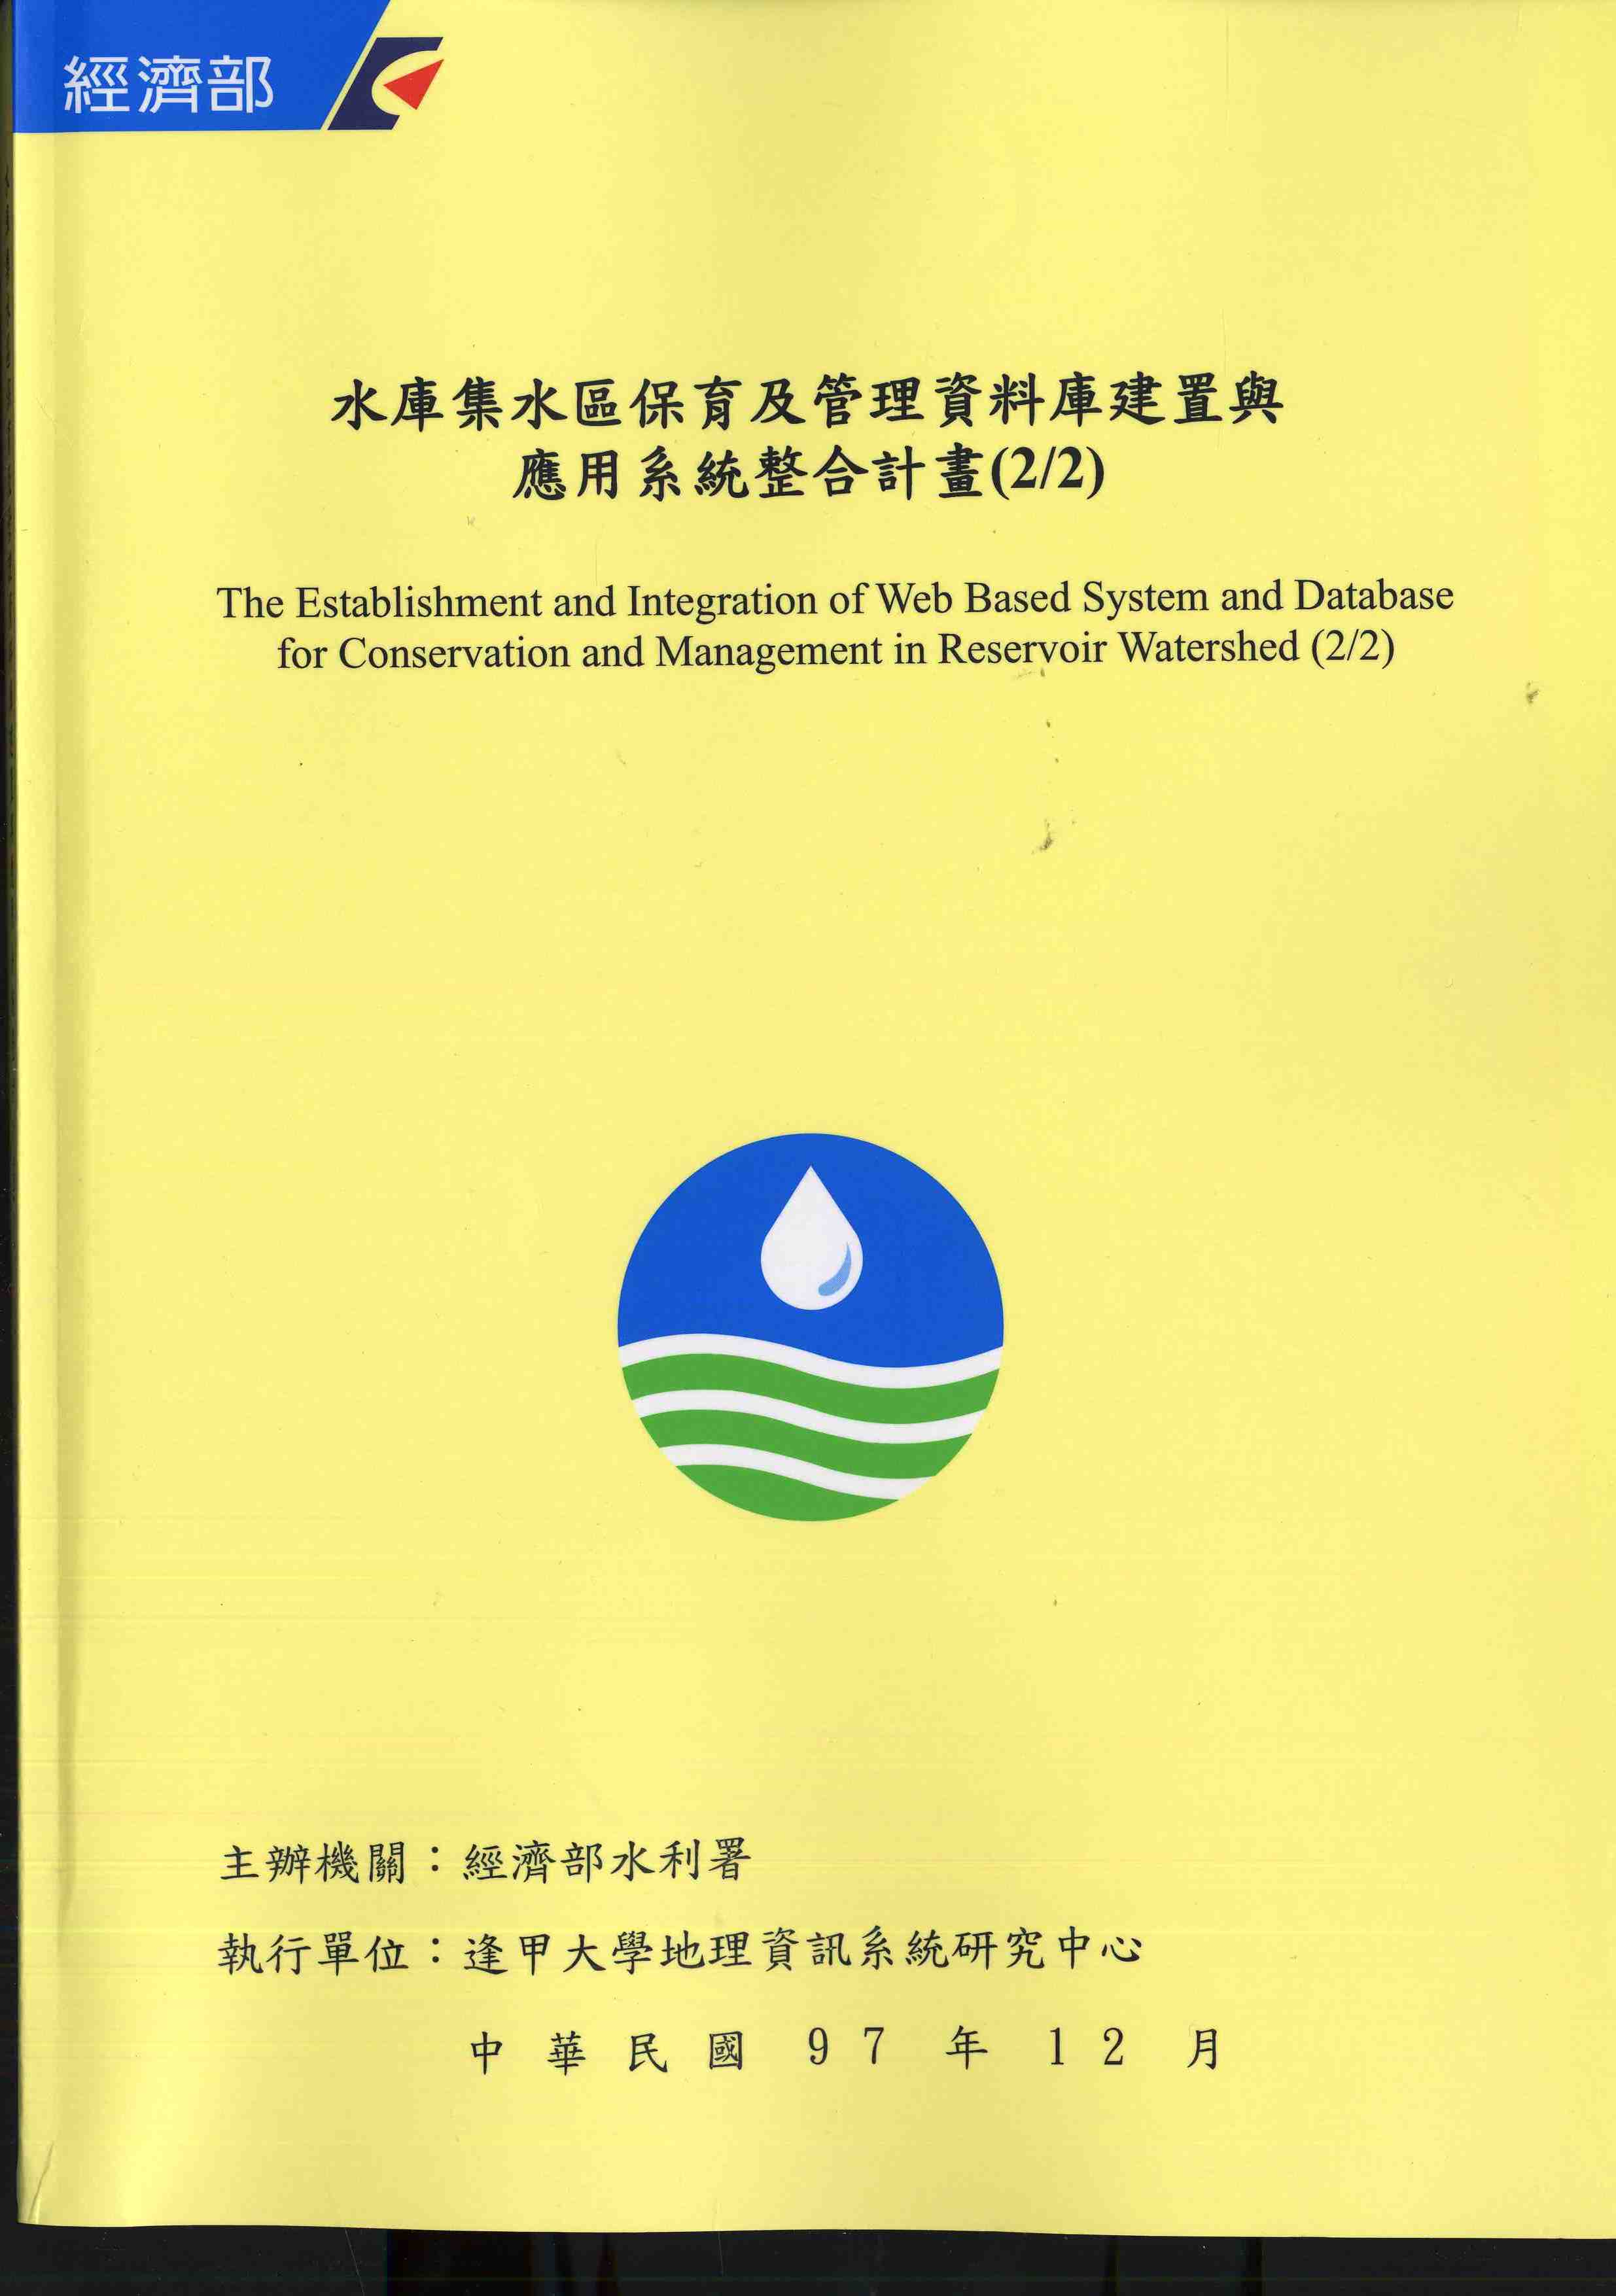 水庫集水區保育及管理資料庫建置與應用系統整合計畫(2/2)